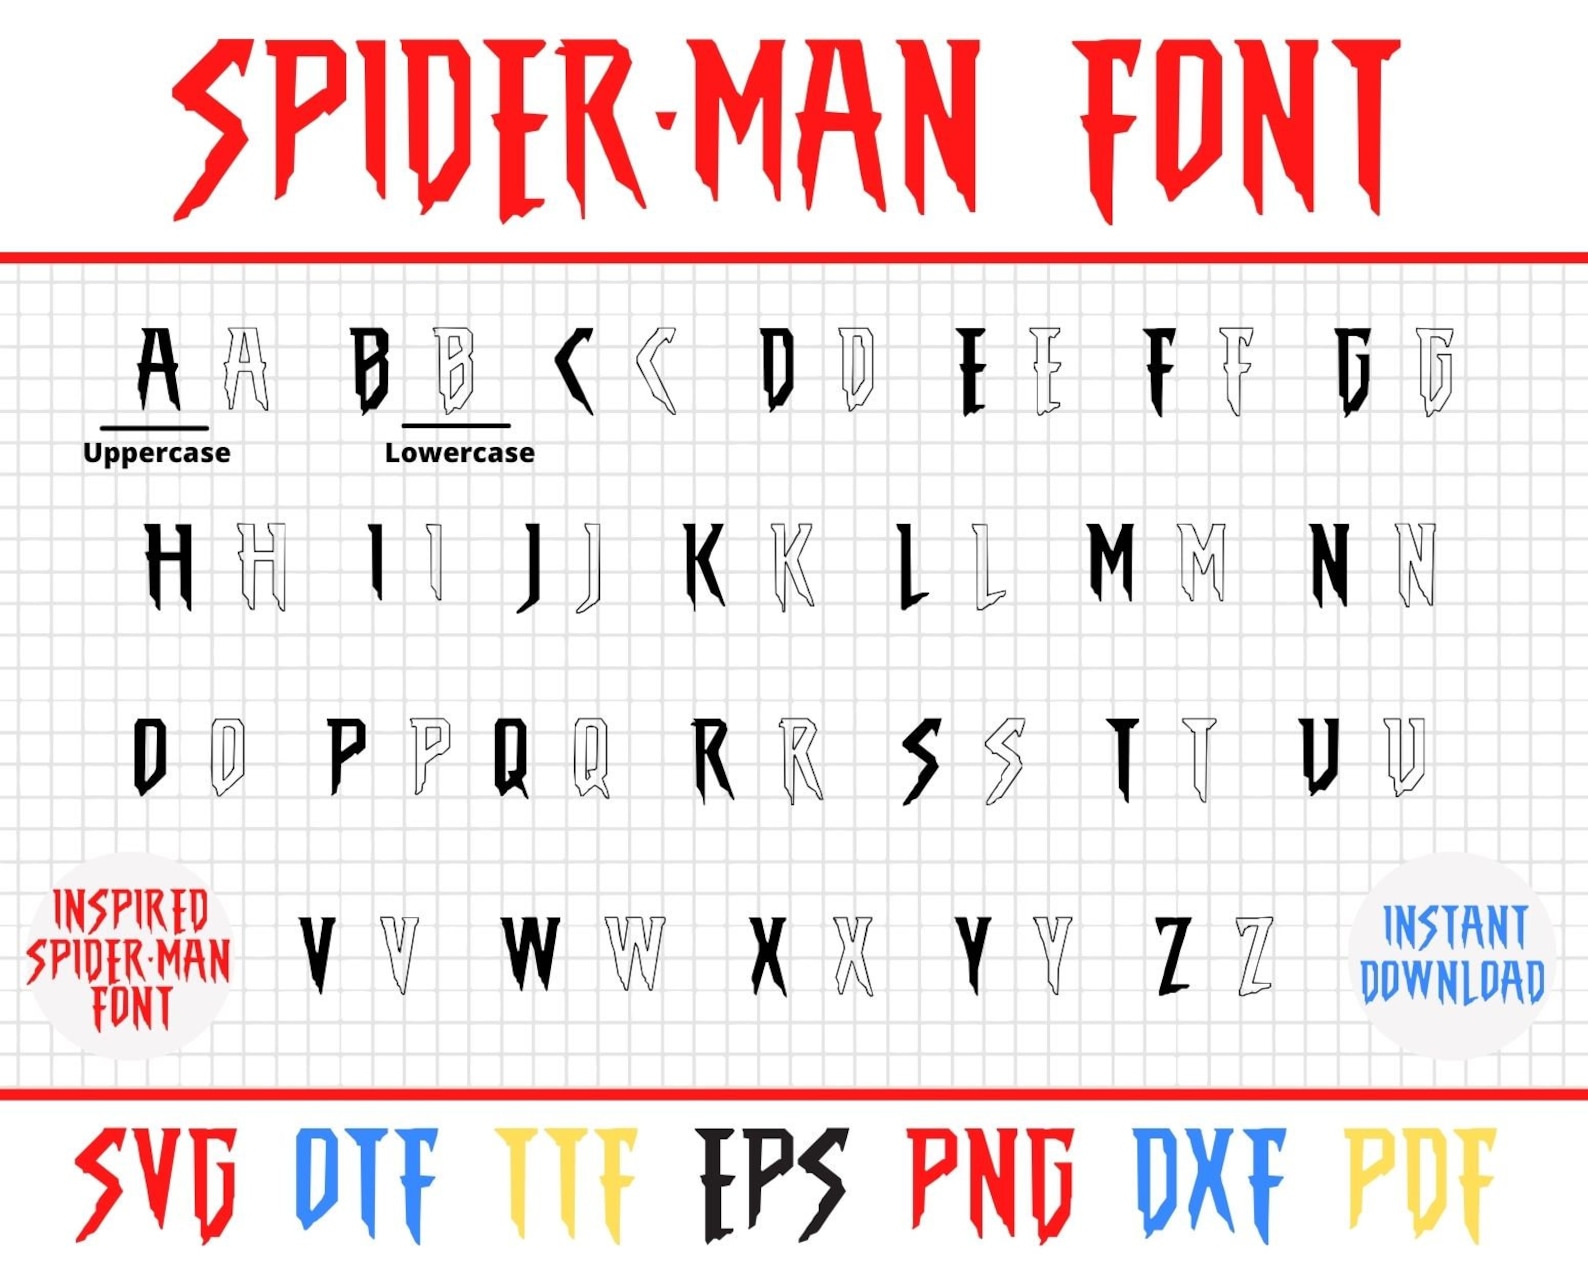 Spiderman Font Spiderman Font Svg Spiderman Svg Spiderman | Etsy